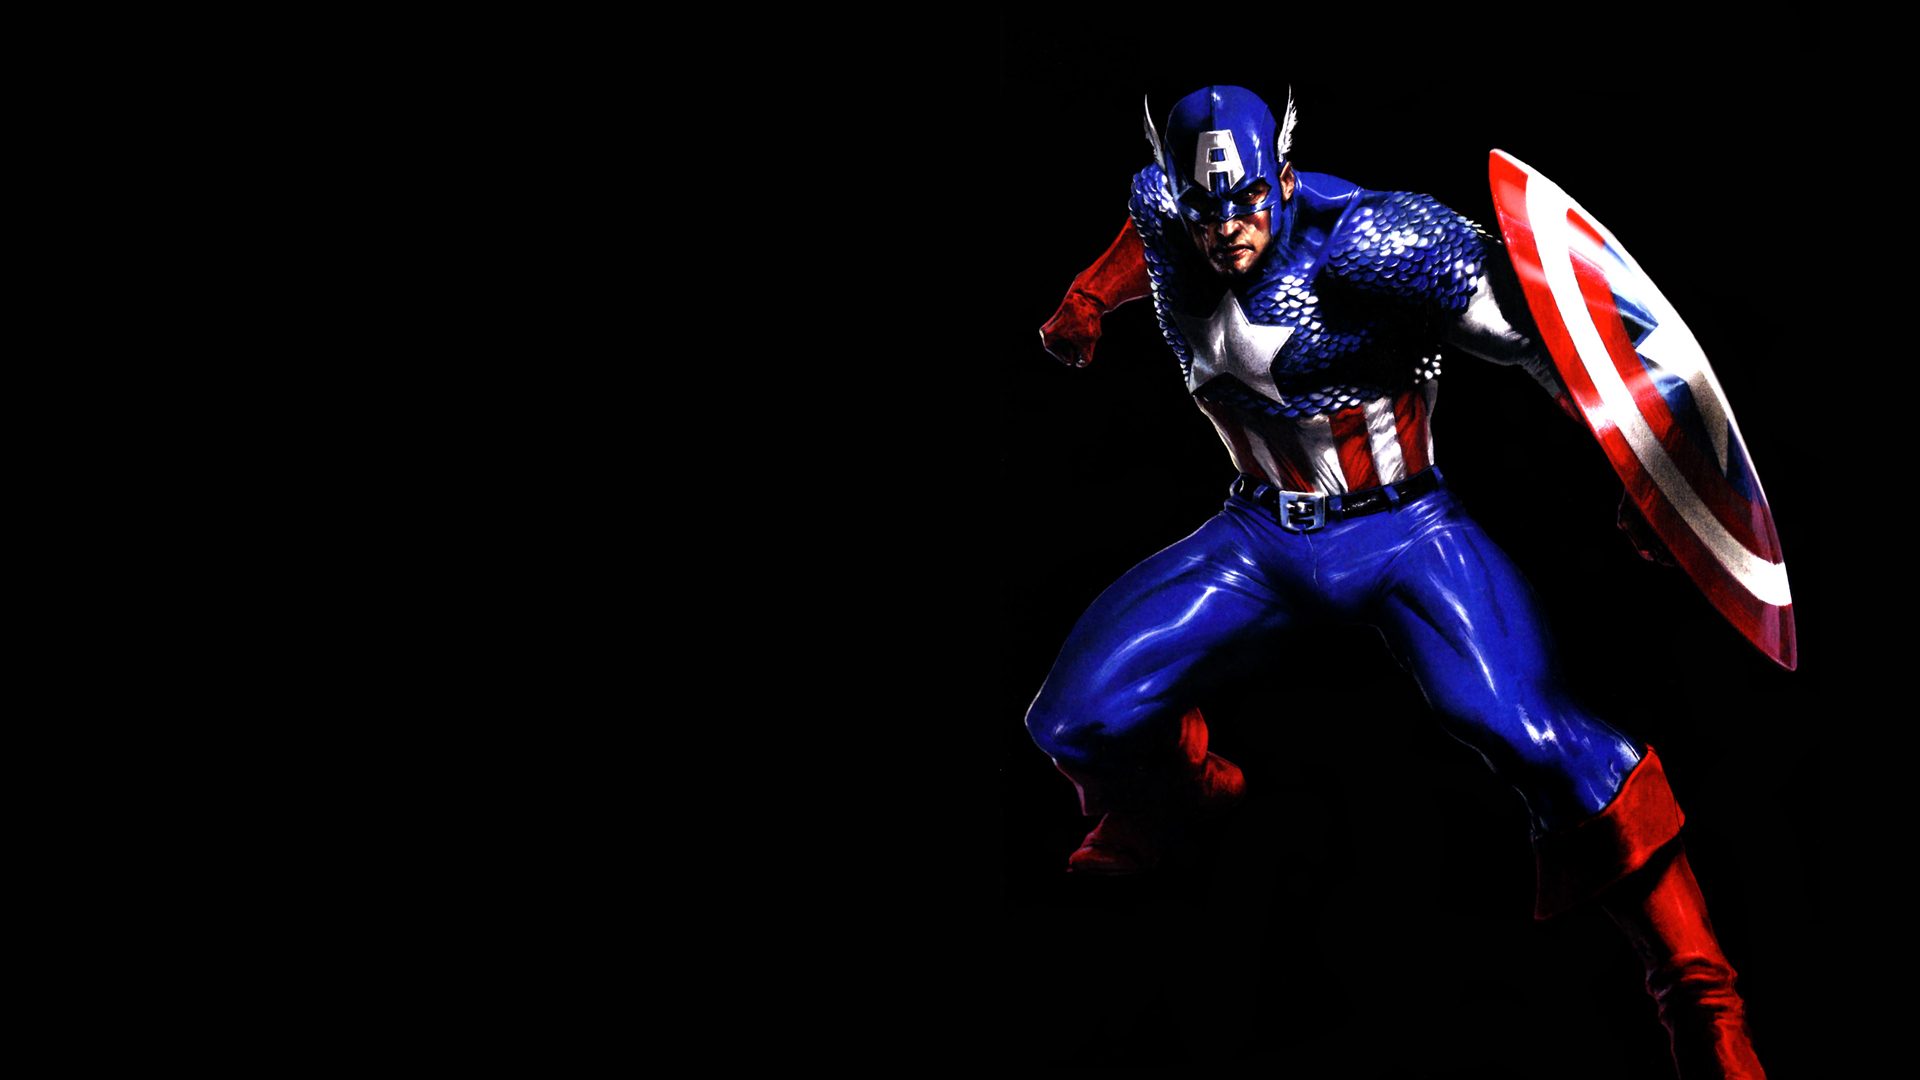 título de fondo de pantalla,personaje de ficción,superhéroe,figura de acción,héroe,capitan america